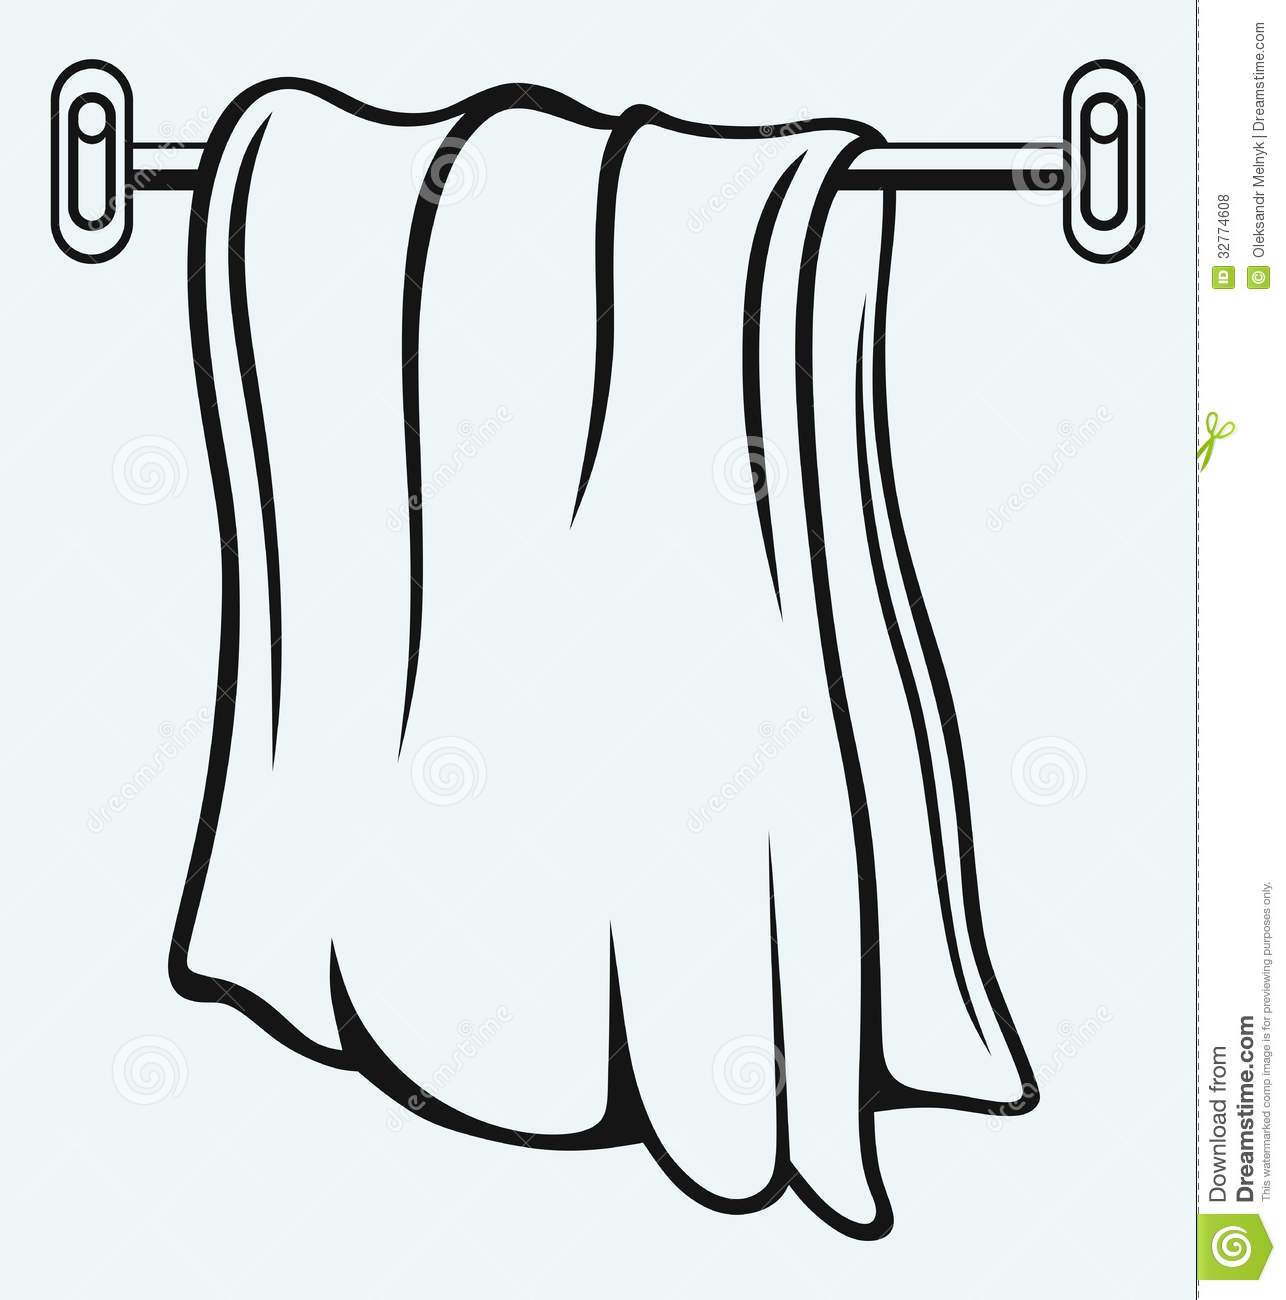 Towel clipart hang.